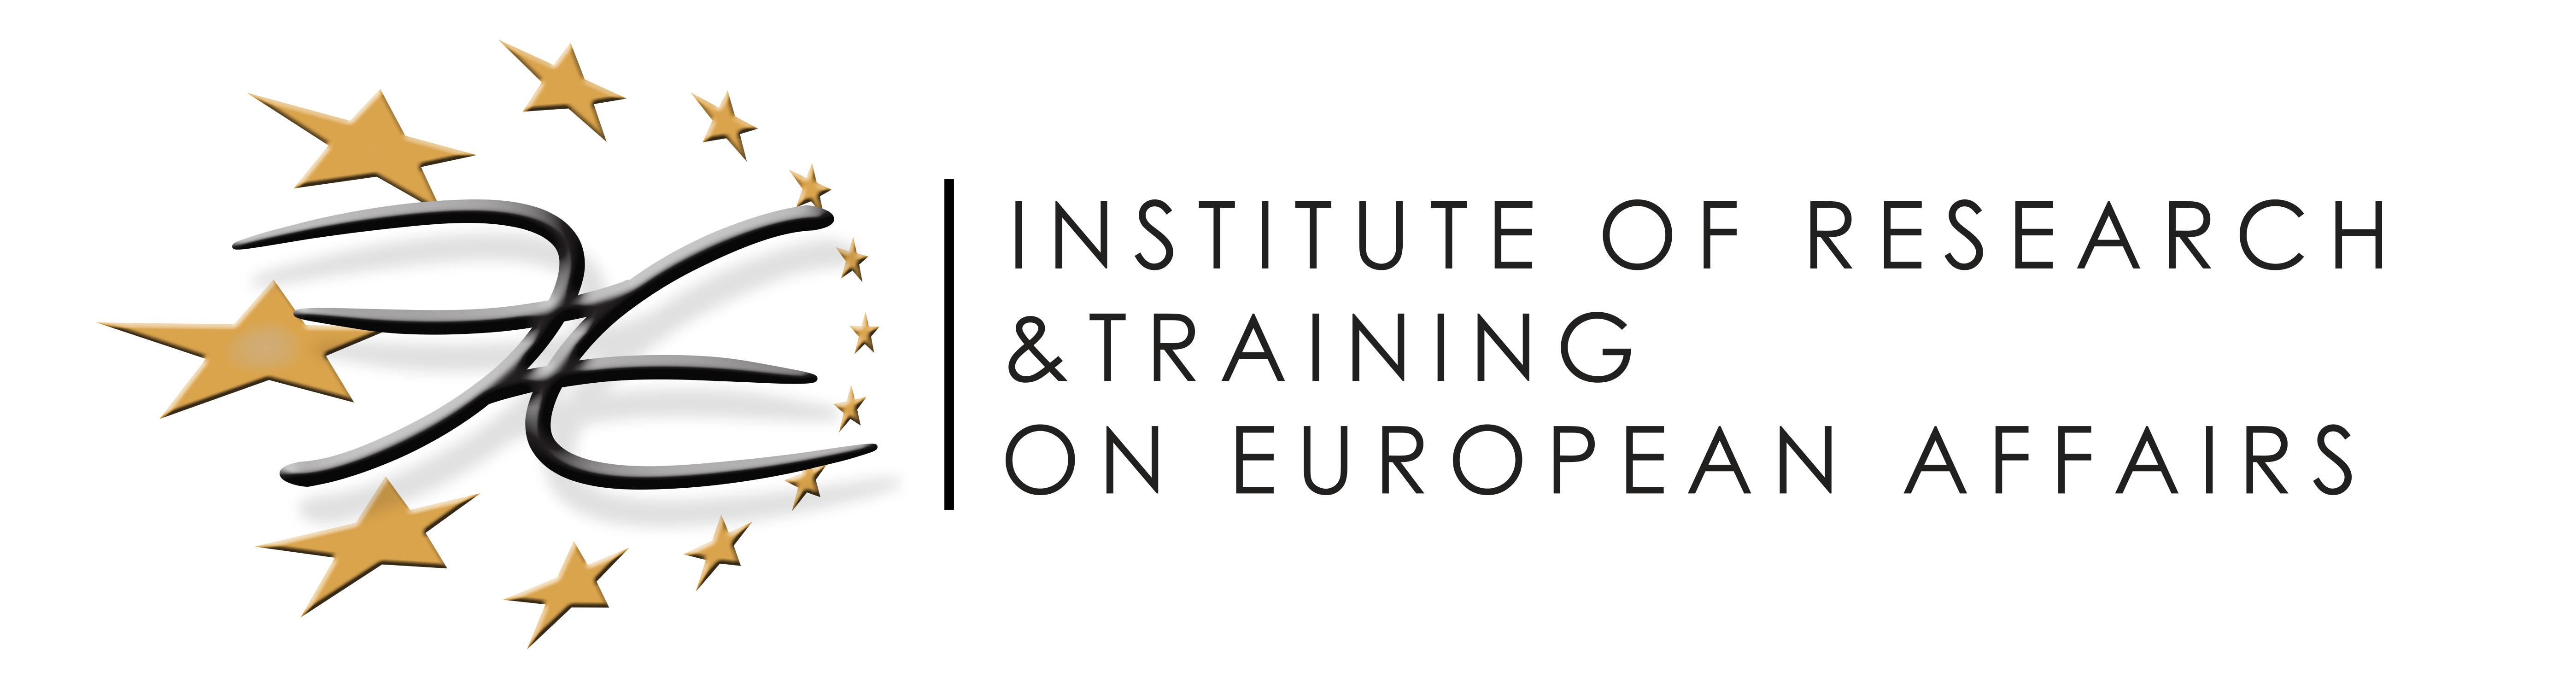 IRTEA - Institute of Research & Training on European Affairs